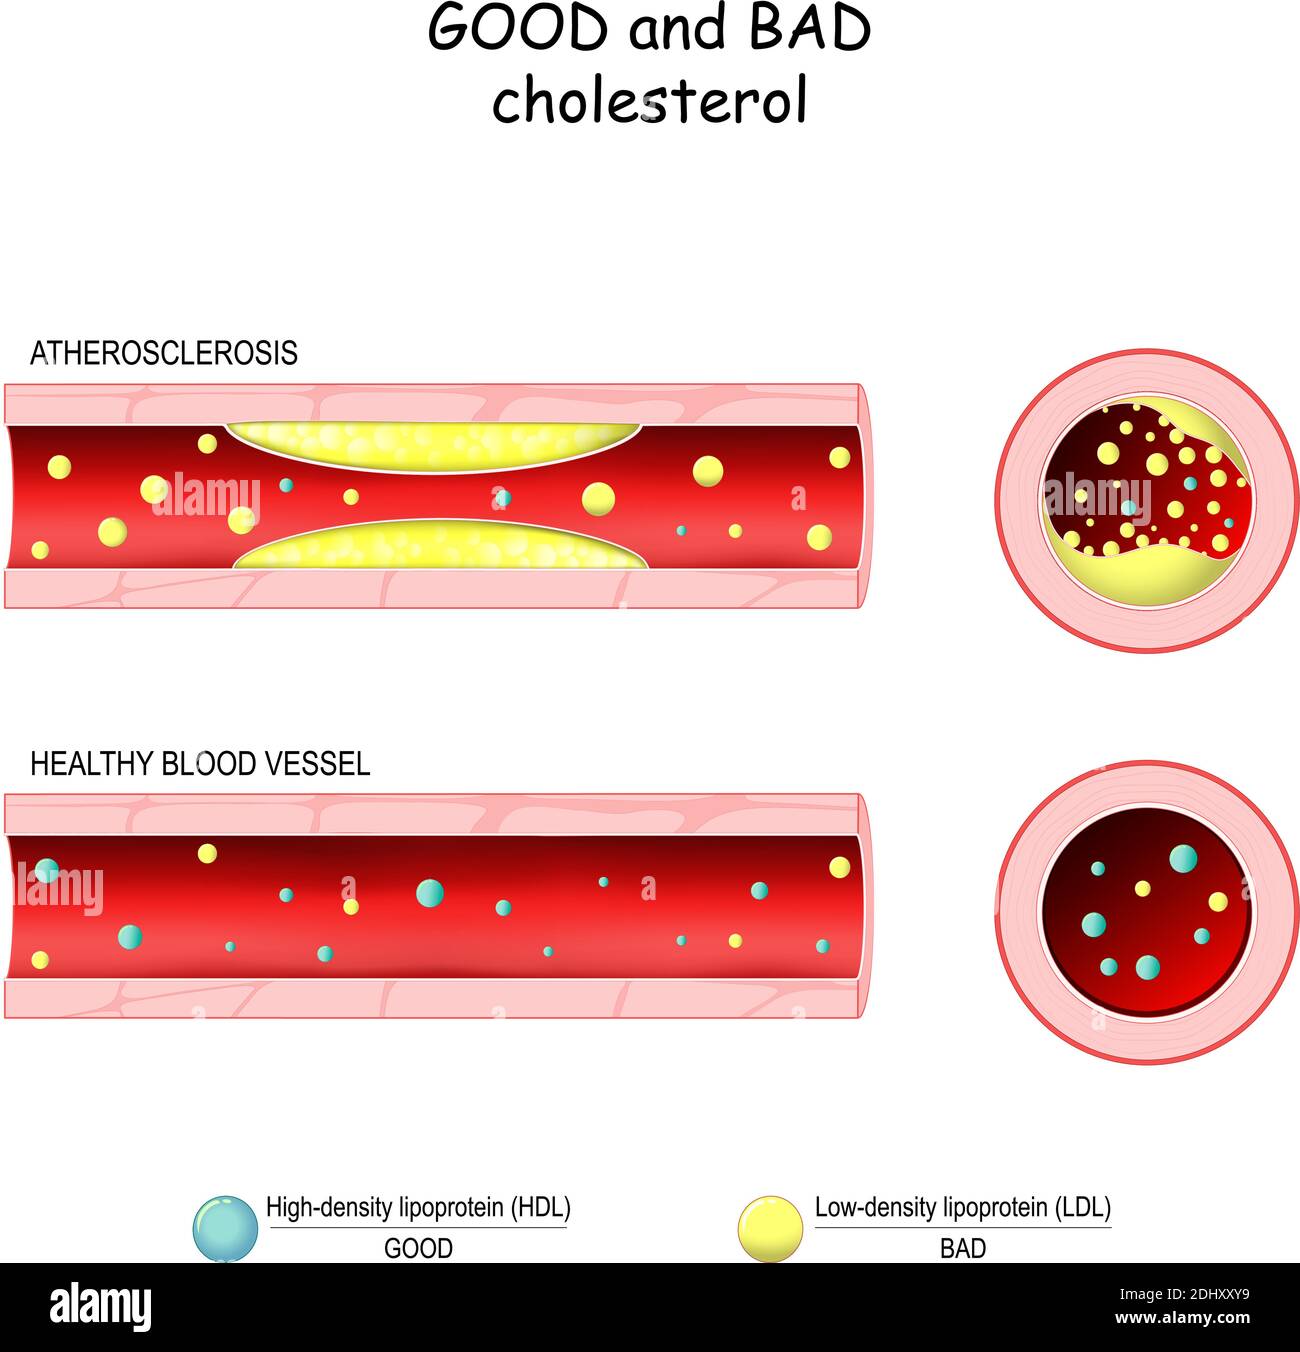 Colesterolo buono (HDL) e cattivo (LDL). Vasi sanguigni sani e aterosclerosi. Sezione trasversale del vaso sanguigno. Lipoproteine ad alta densità e bassa densità Illustrazione Vettoriale